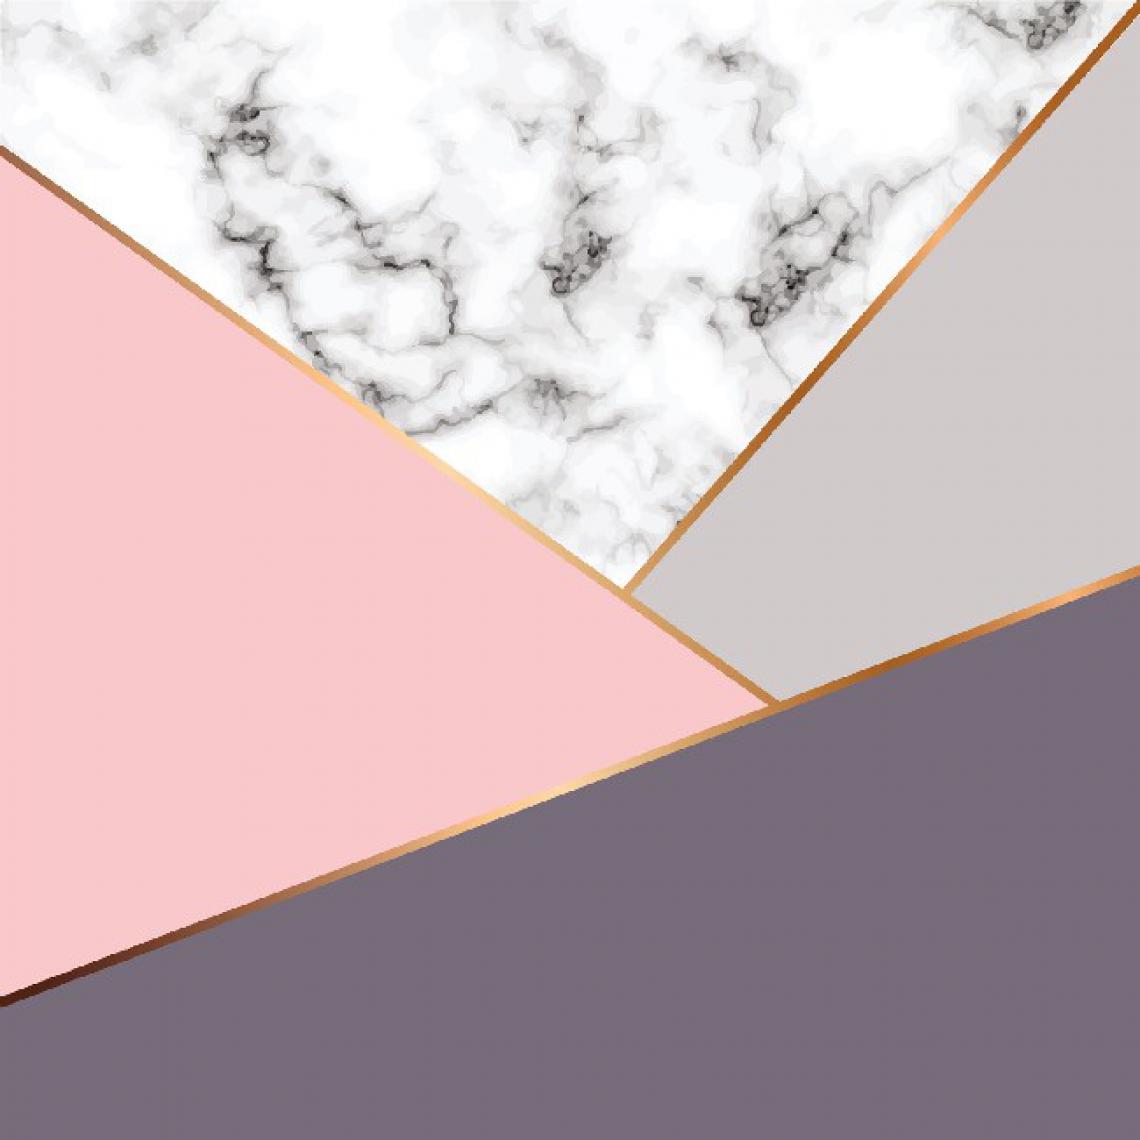 Homemania - HOMEMANIA Tapis Imprimé Pink Of Happiness 2 - Géométrique - Décoration de Maison - Antidérapant - Pour Salon, séjour, chambre à coucher - Multicolore en Polyester, Coton, 120 x 180 cm - Tapis